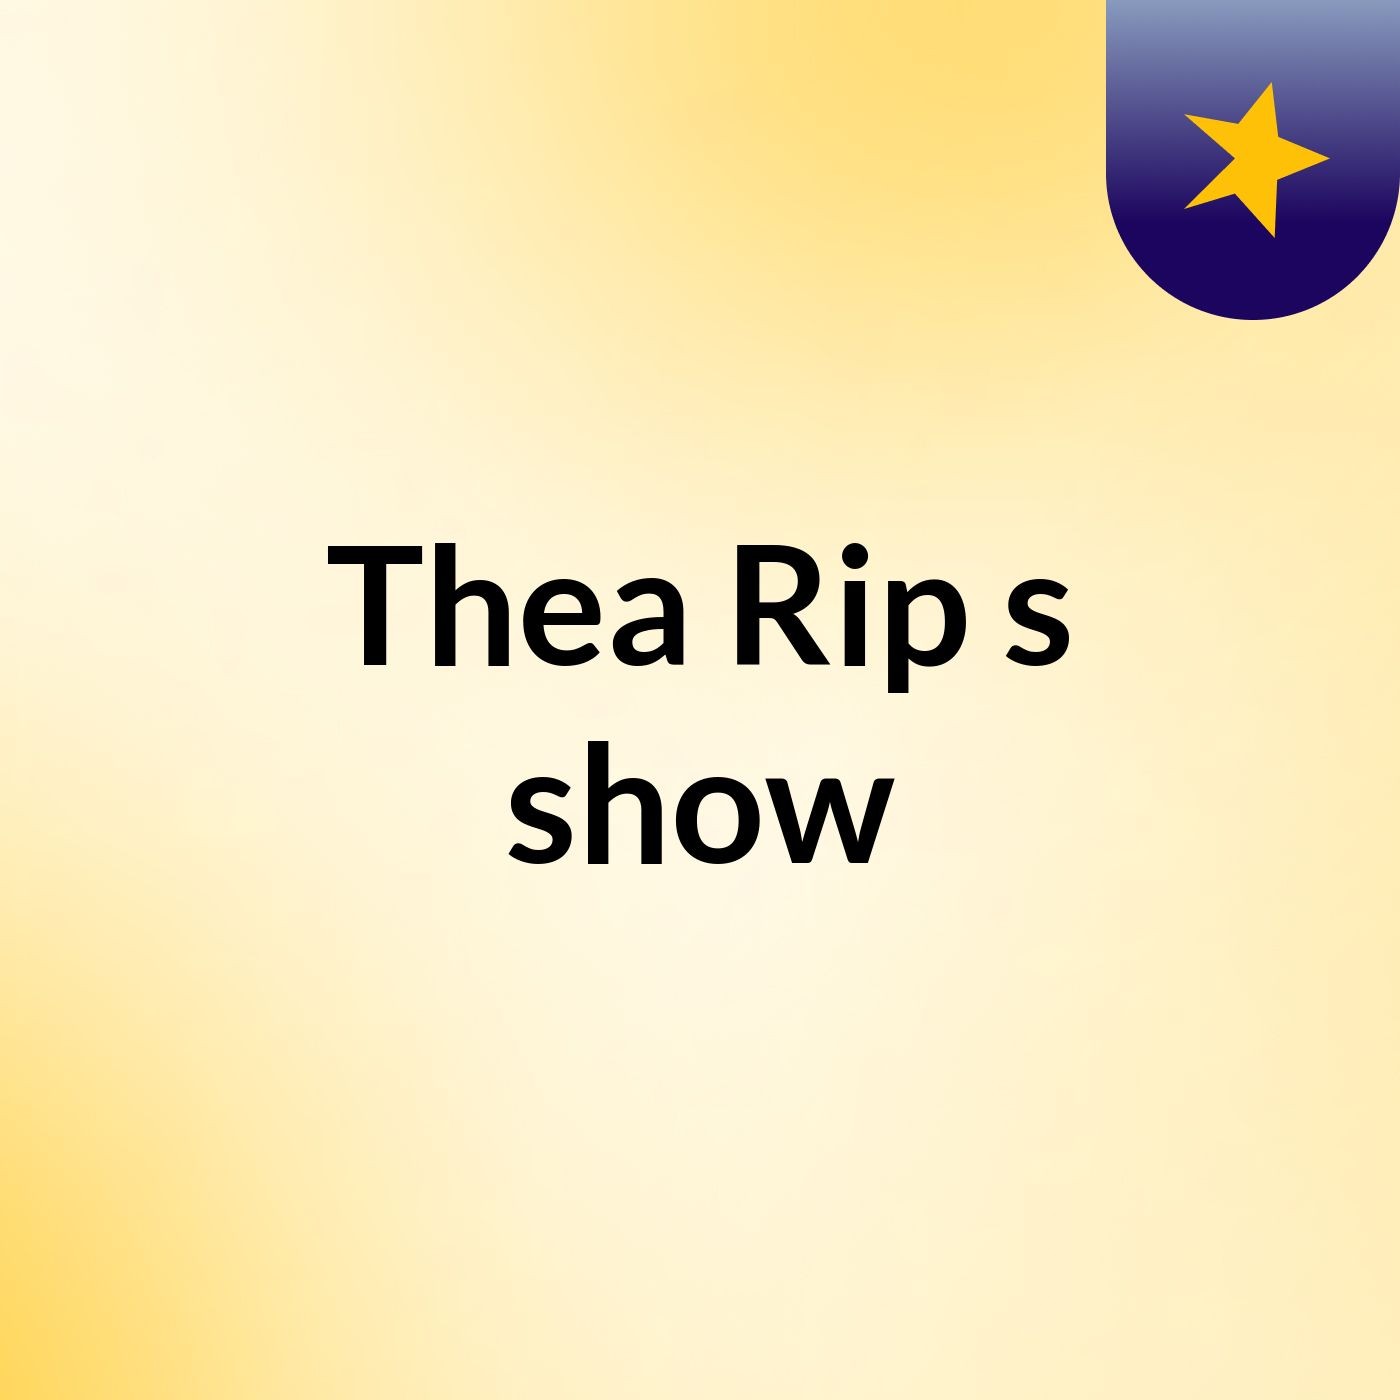 Thea Rip's show